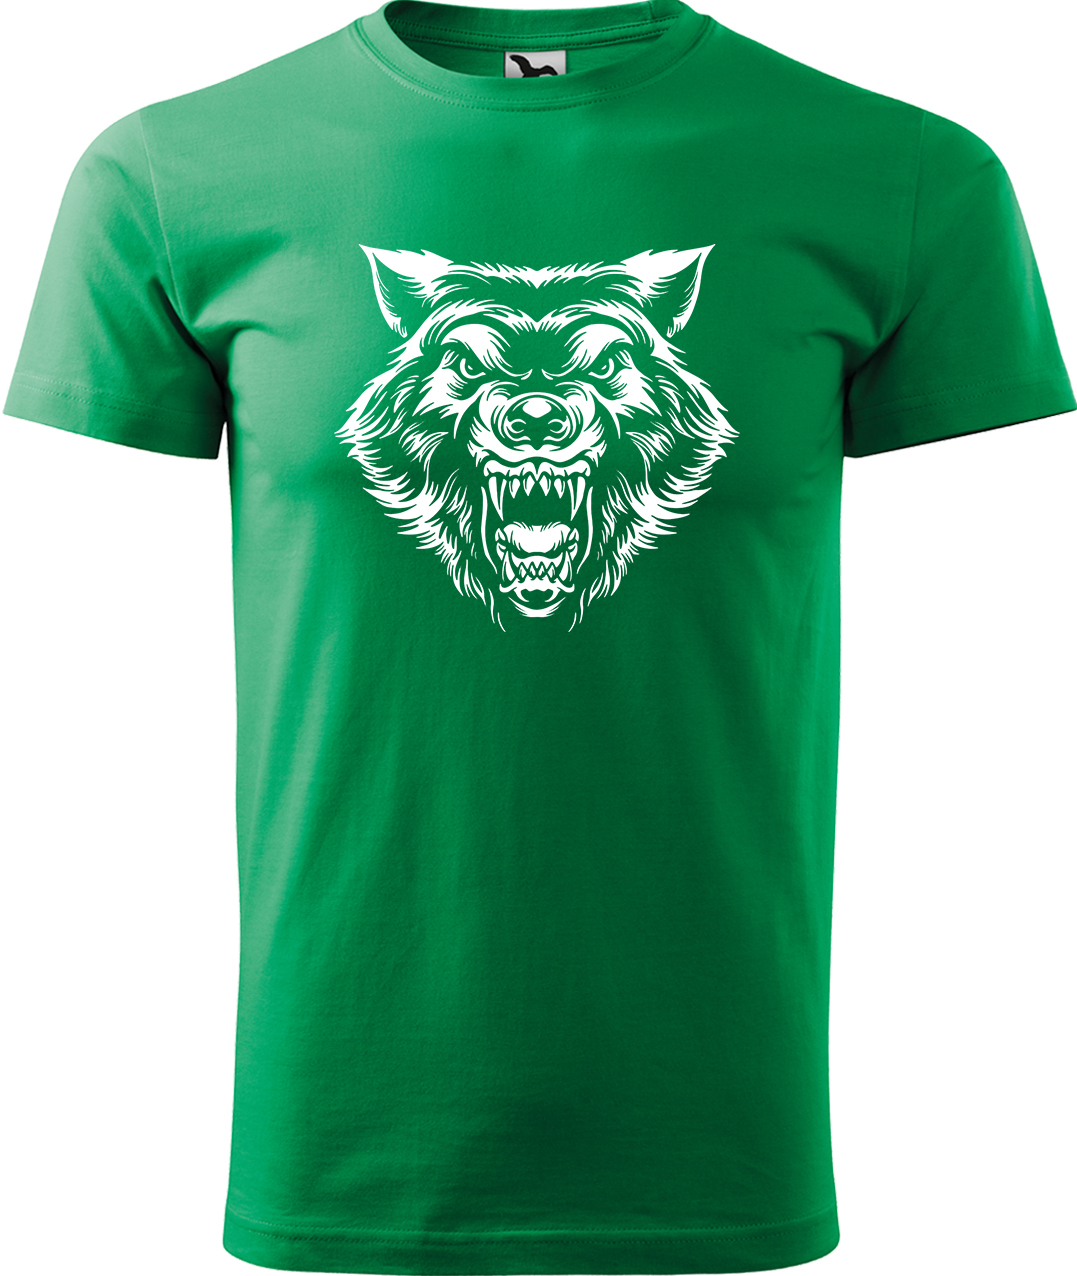 Pánské tričko s vlkem - Rozzuřený vlk Velikost: XL, Barva: Středně zelená (16), Střih: pánský